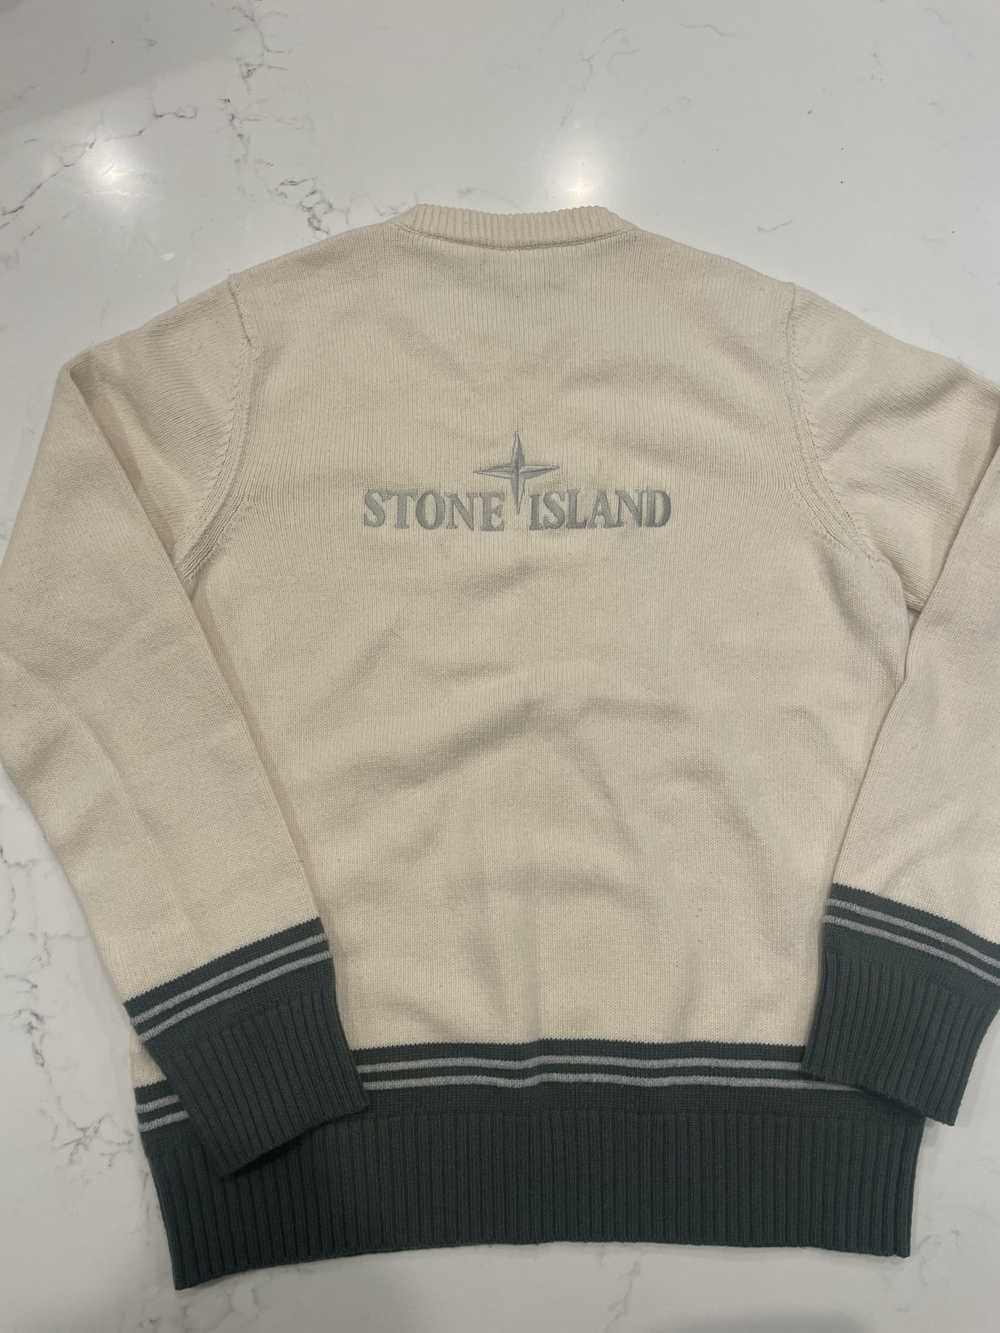 Stone Island Vintage Stone Island Knit Sweater - image 2